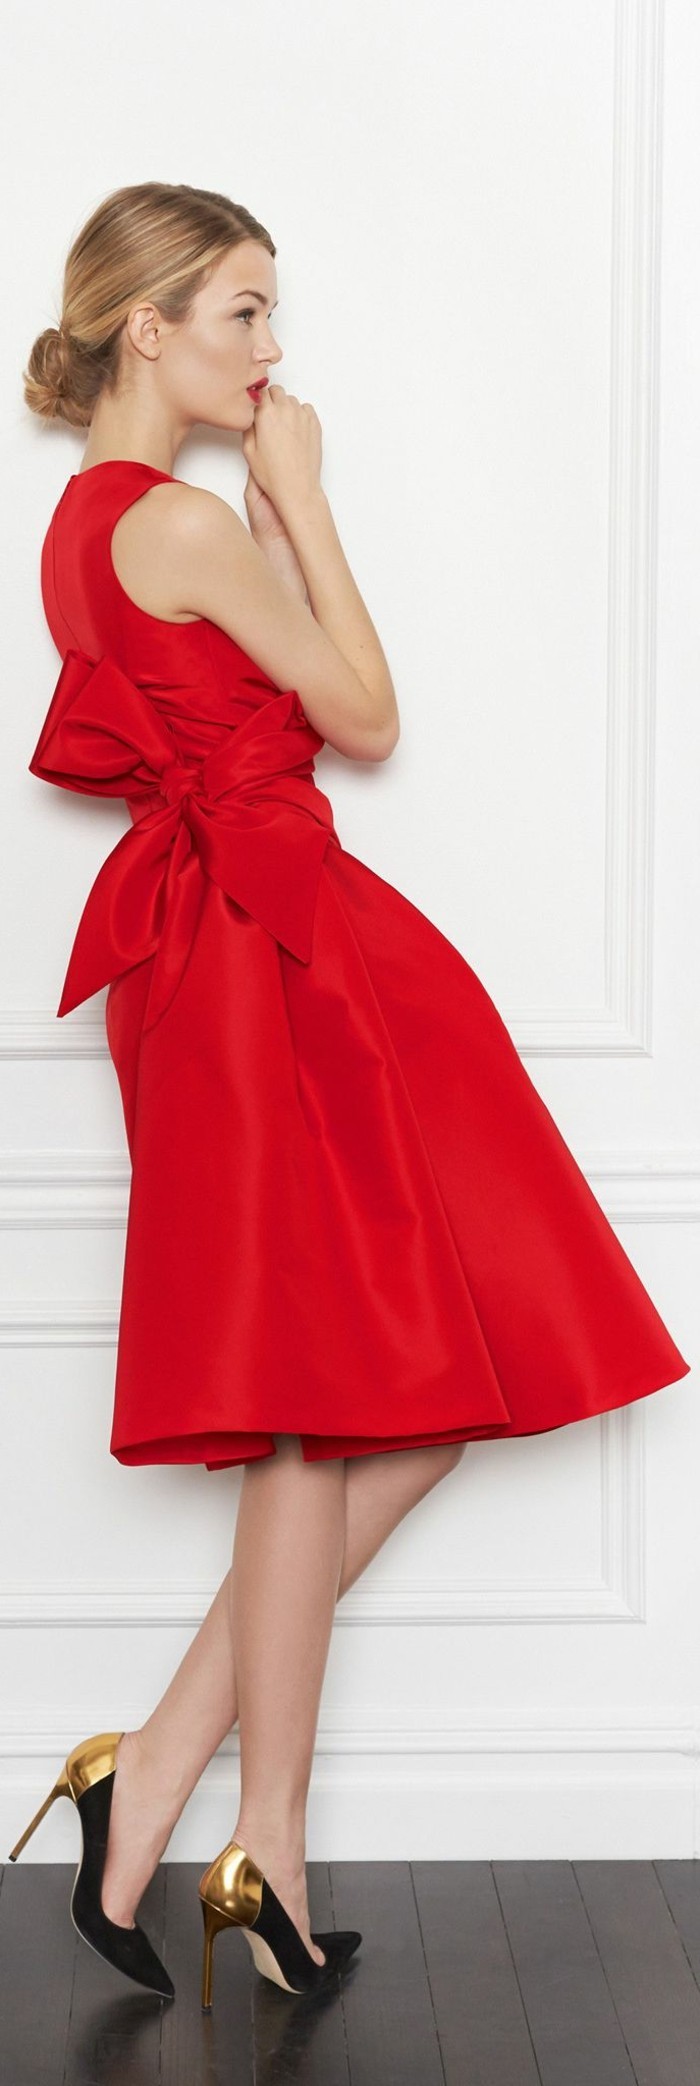 piros ruha cipő, amely Arany cipő sarka Red-dress-szőke haj szép frizura-ötletek-look